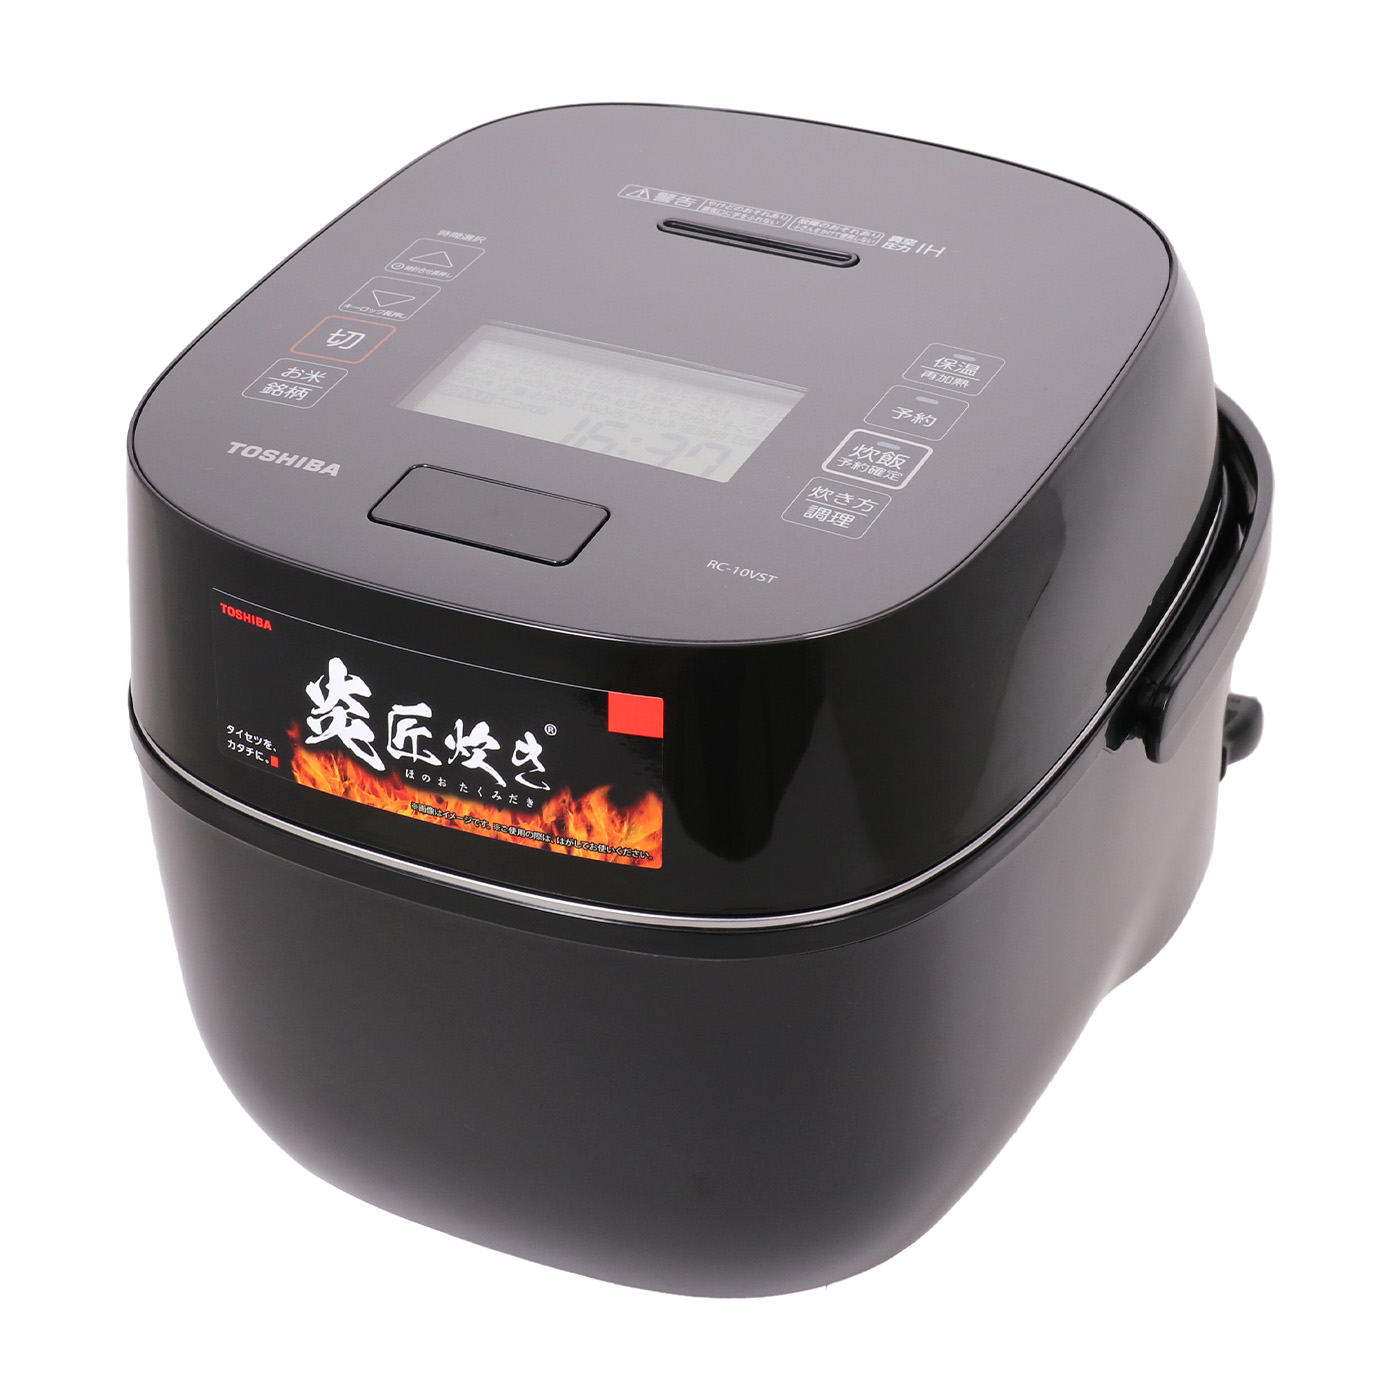 東芝 炊飯器 5.5合 真空圧力IHジャー炊飯器 保温40時間 備長炭本丸鉄釜 グランブラック RC-10VPN(K)